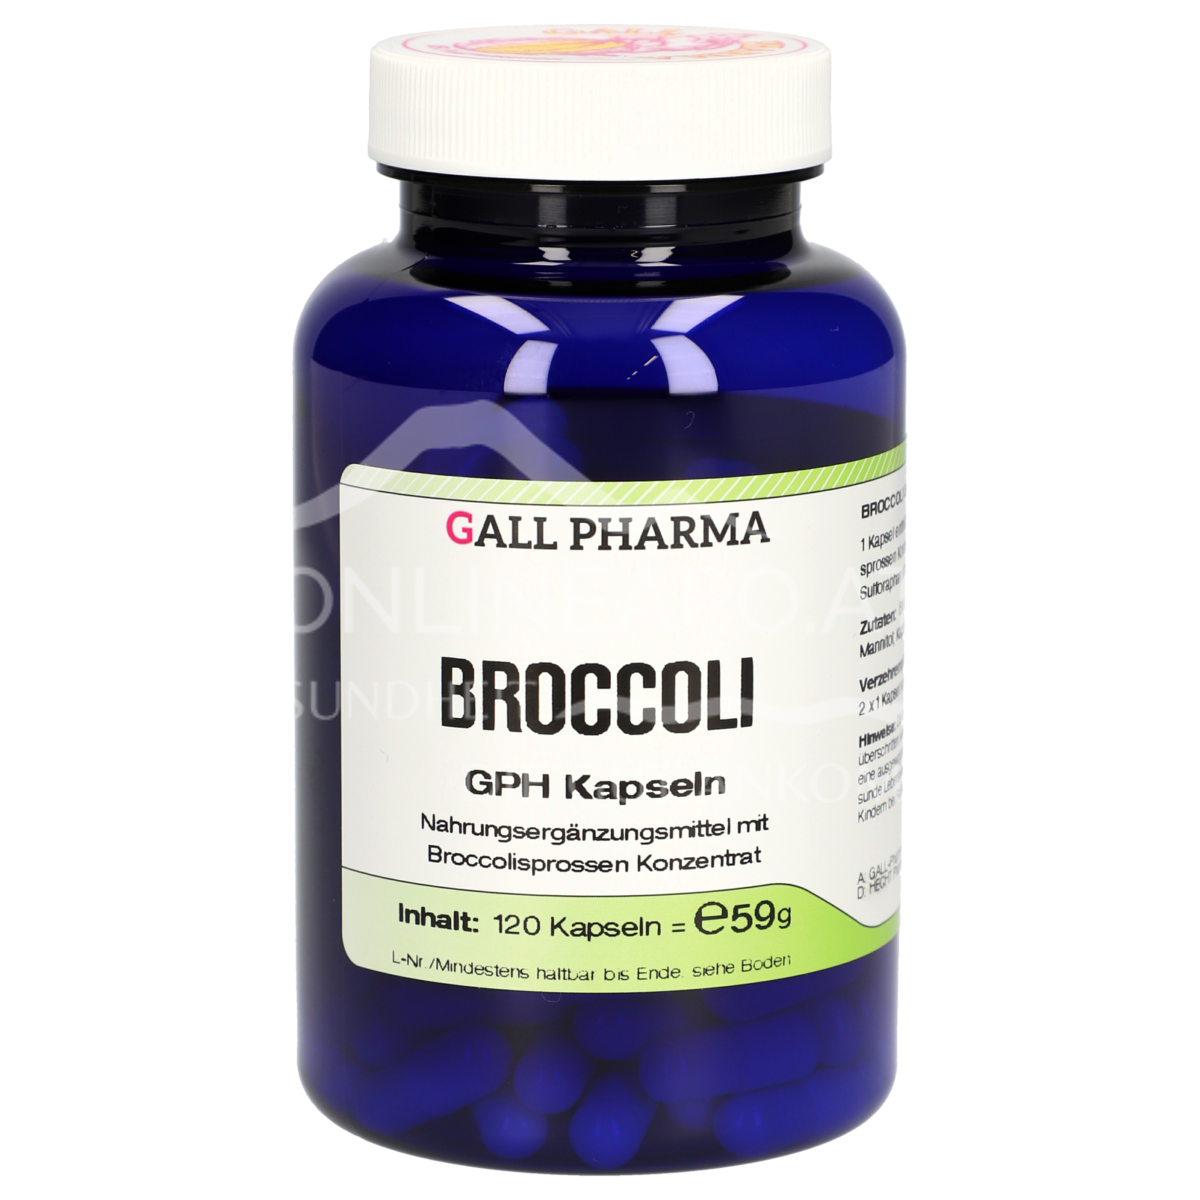 Gall Pharma Broccoli Kapseln